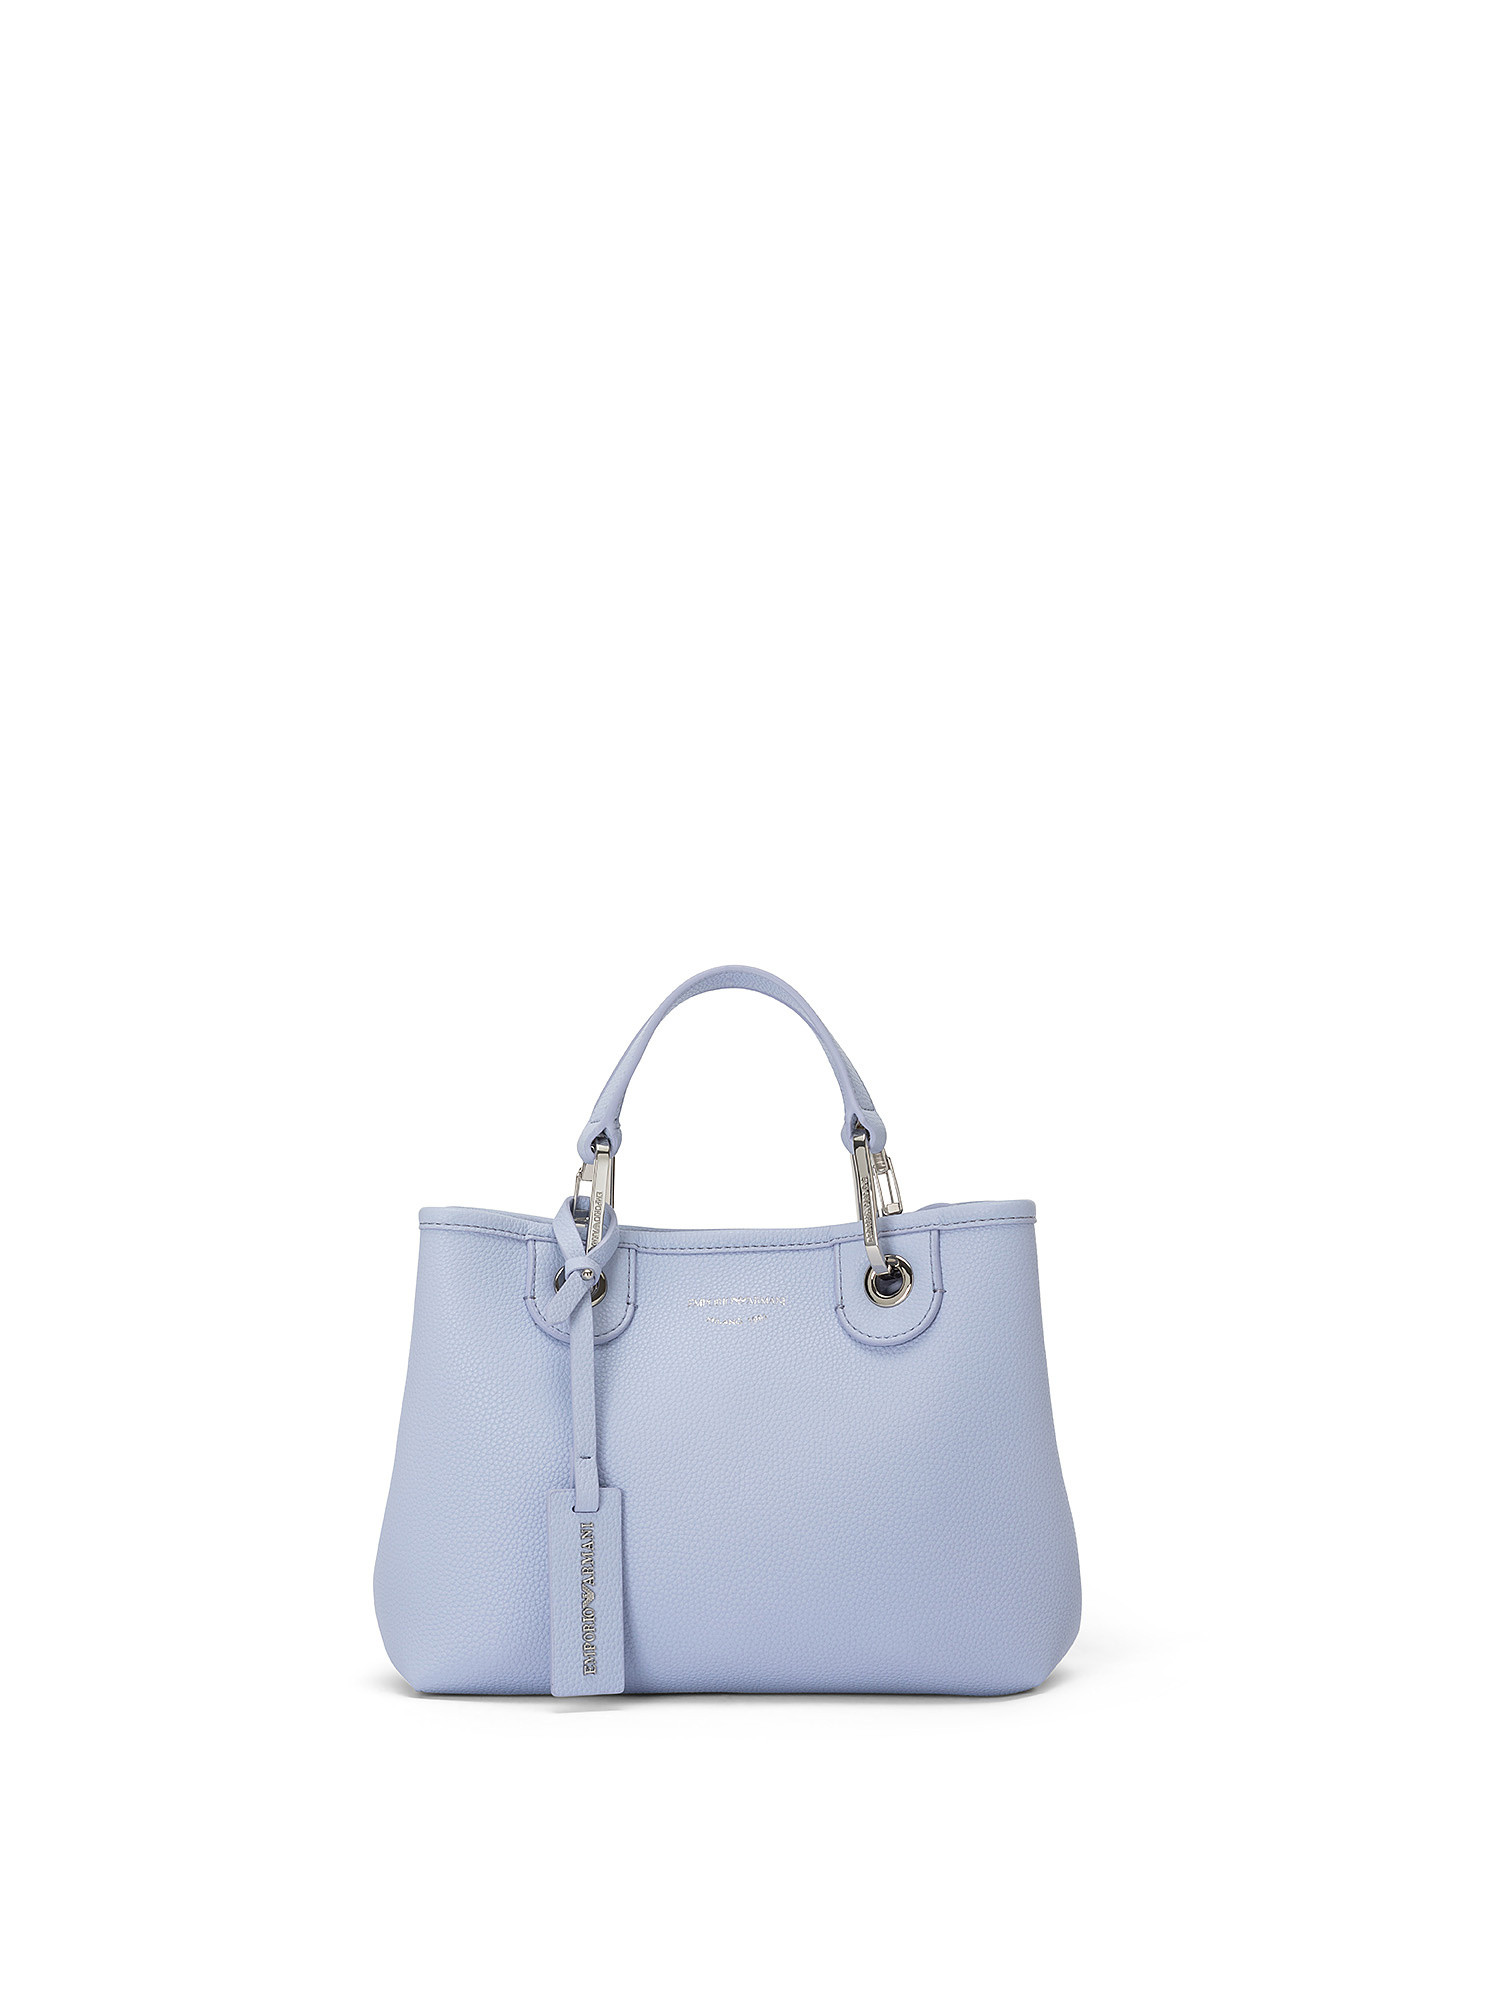 Shopping bag, Azzurro, large image number 0